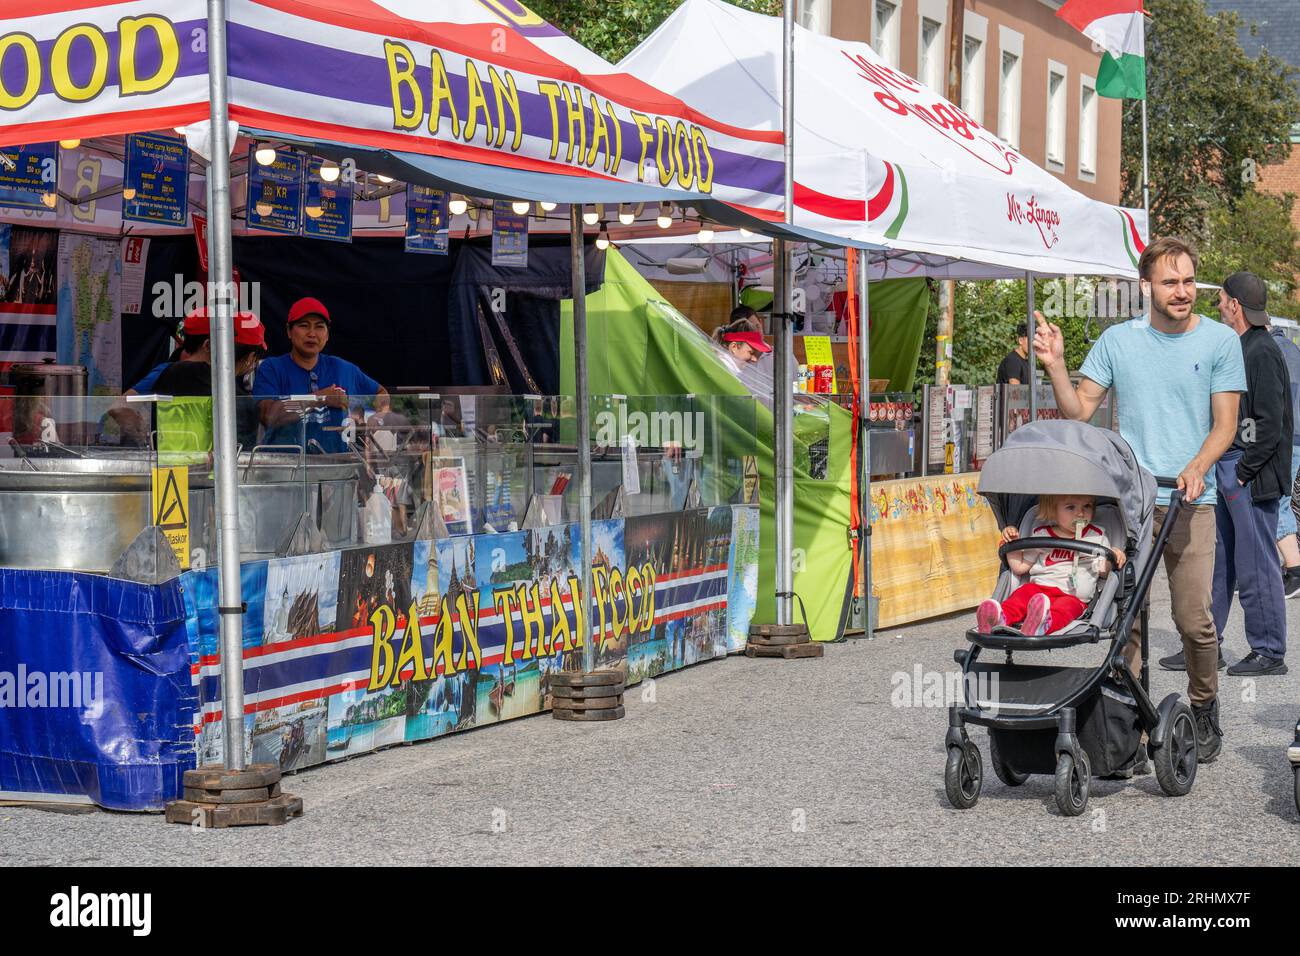 Le marché international de la nourriture de rue pendant la fête d'août 2023. Le festival d'août est un événement annuel à Norrköping, en Suède. Banque D'Images